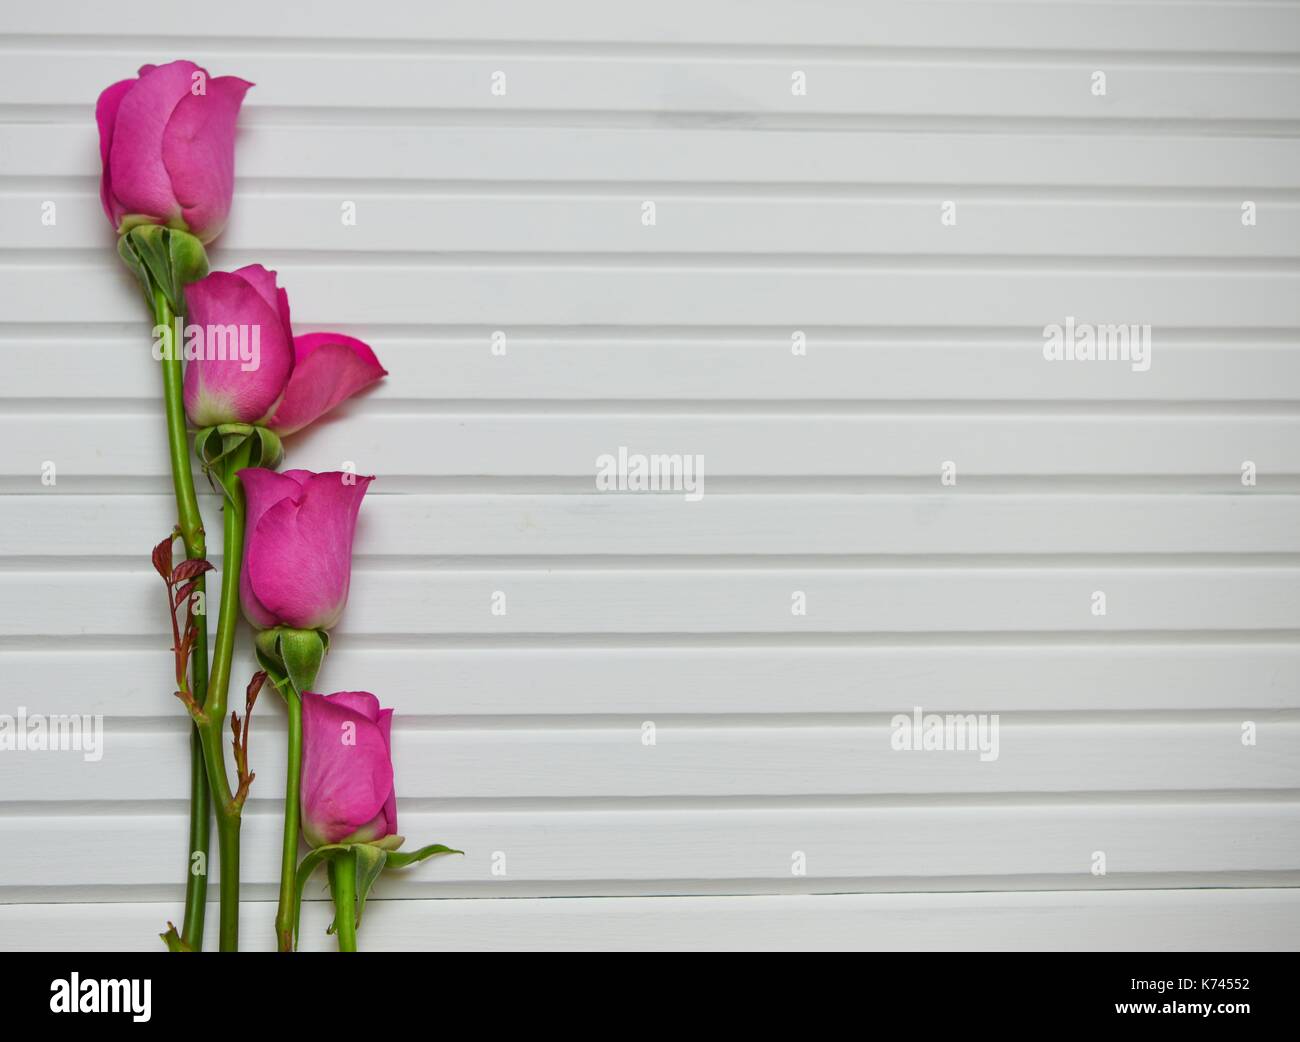 Valentine romantische Blume fotografie Bild von vier leuchtend rosa Rosen auf weißem Holz panel Hintergrund mit grünen Blättern und Stielen und Raum Stockfoto